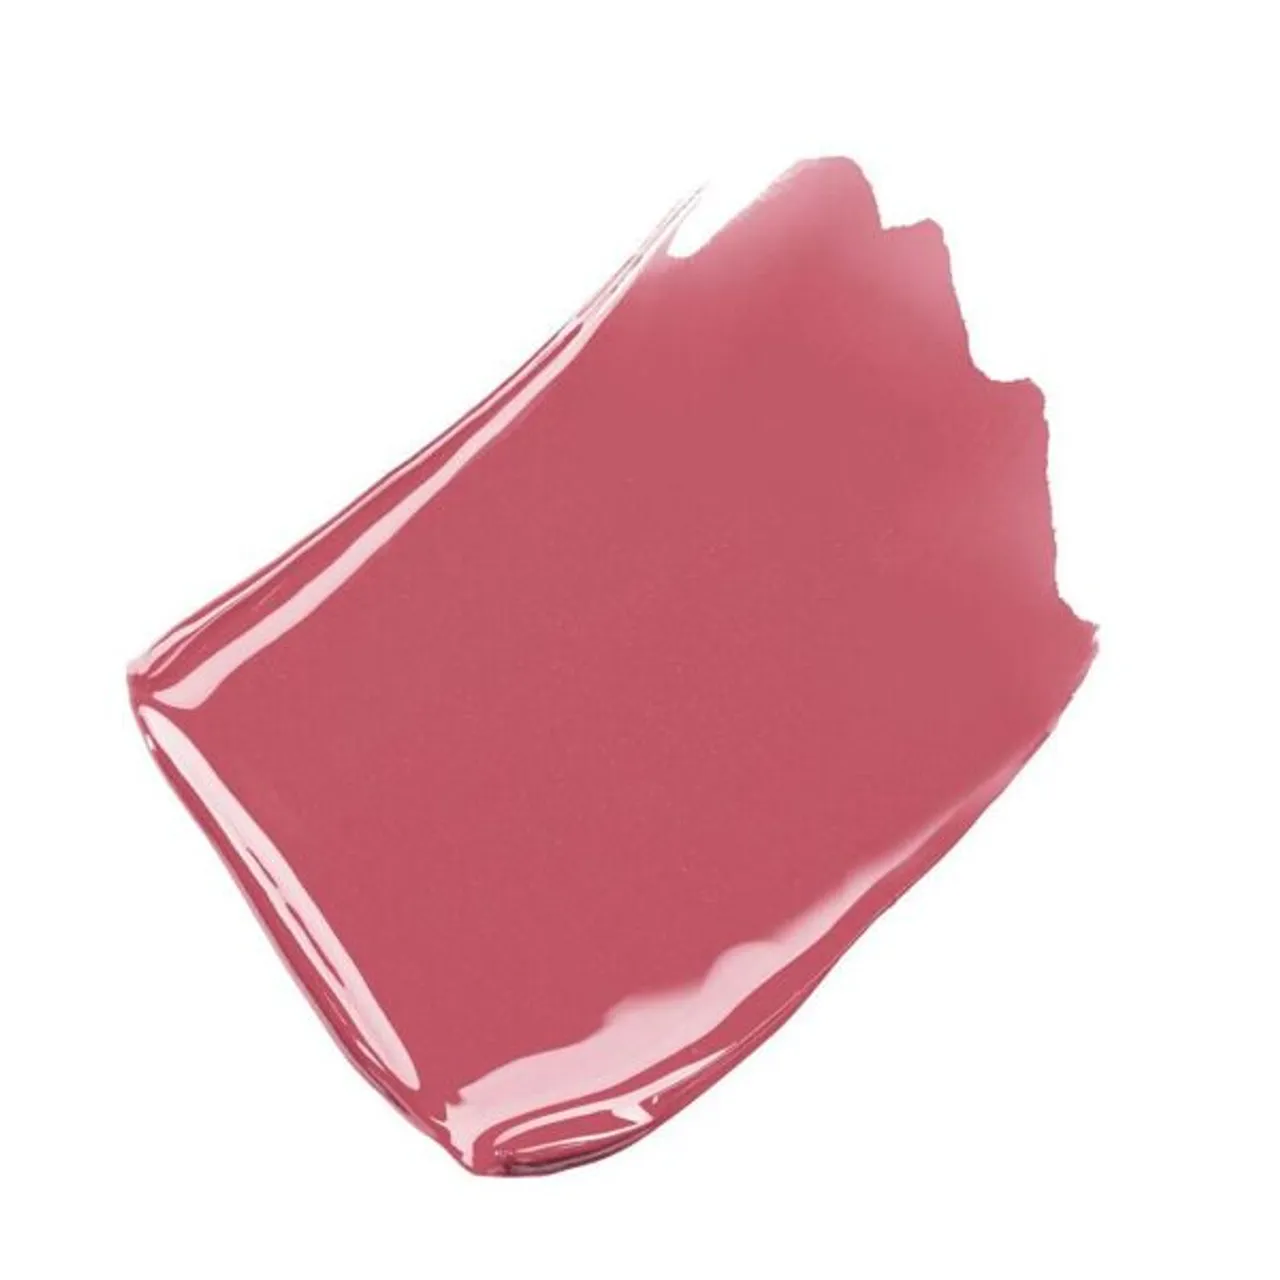 CHANEL Le Rouge Duo Ultra Tenue Ultra Wear Liquid Lip Colour - 172 Light Mauve - Unisex - Size: 8ml